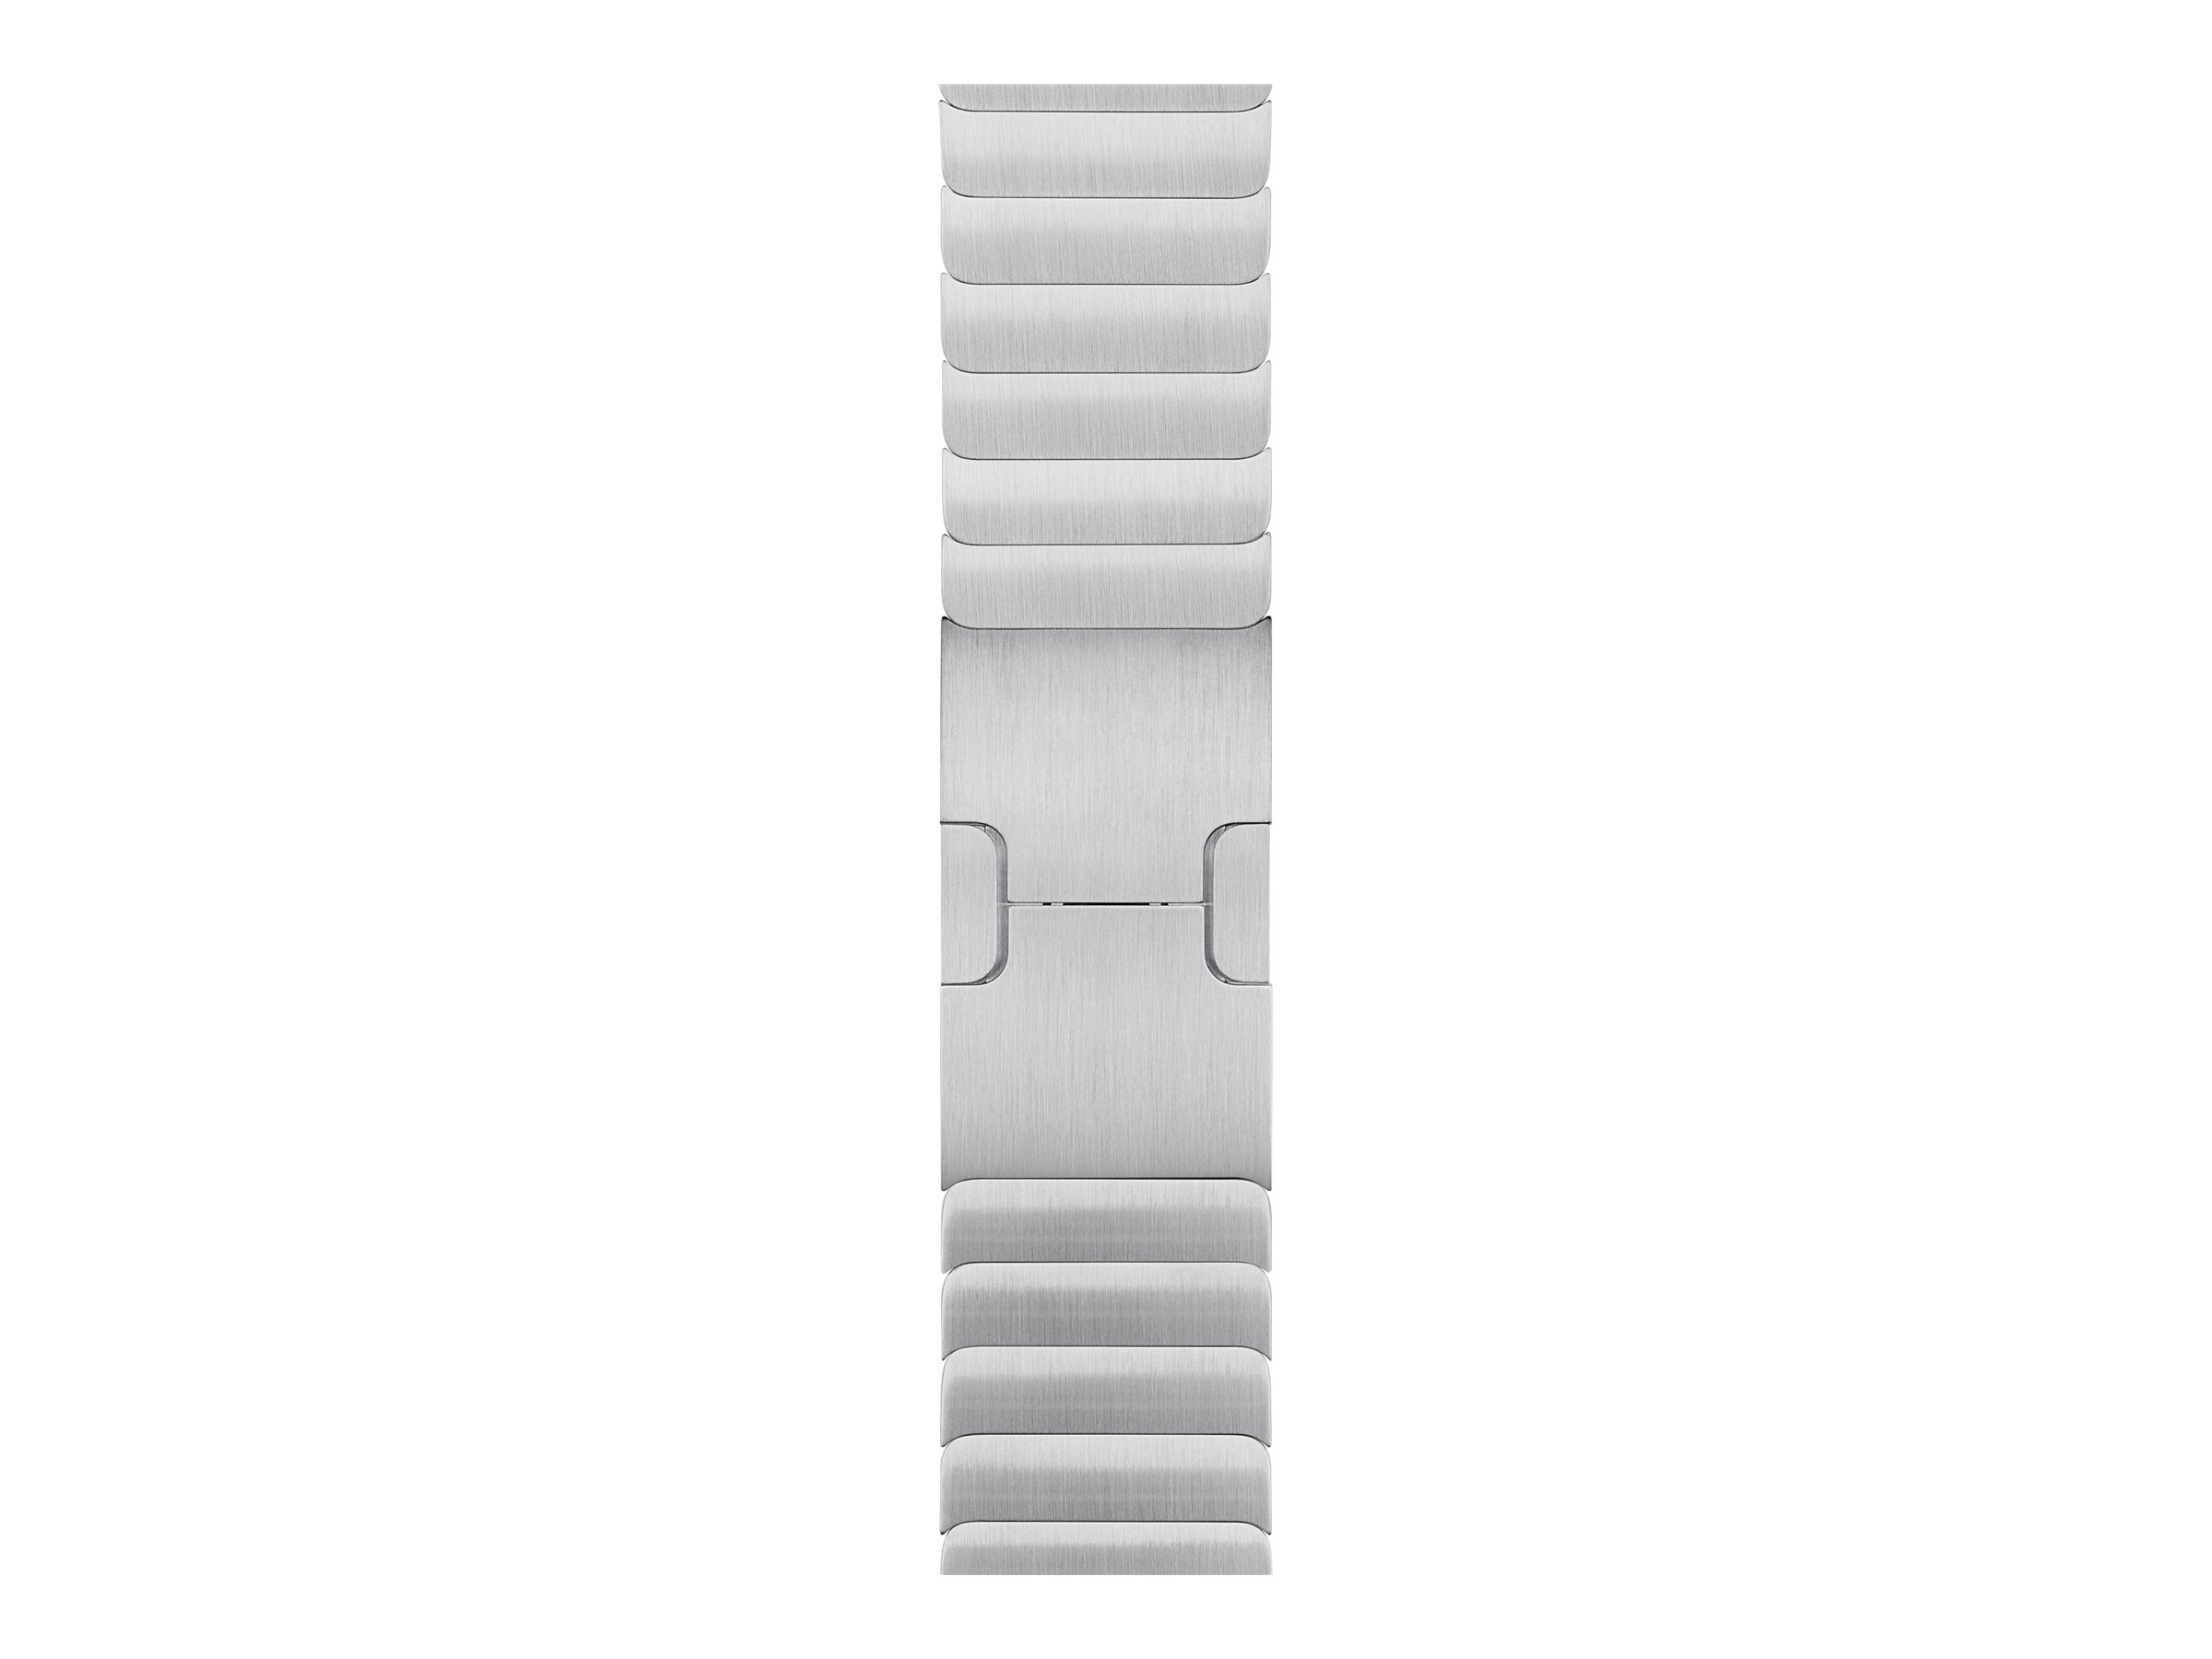 Apple - Bracelet de montre pour montre intelligente - 42mm - 150 - 200 mm - argent - MU9A3ZM/A - Accessoires pour smart watch